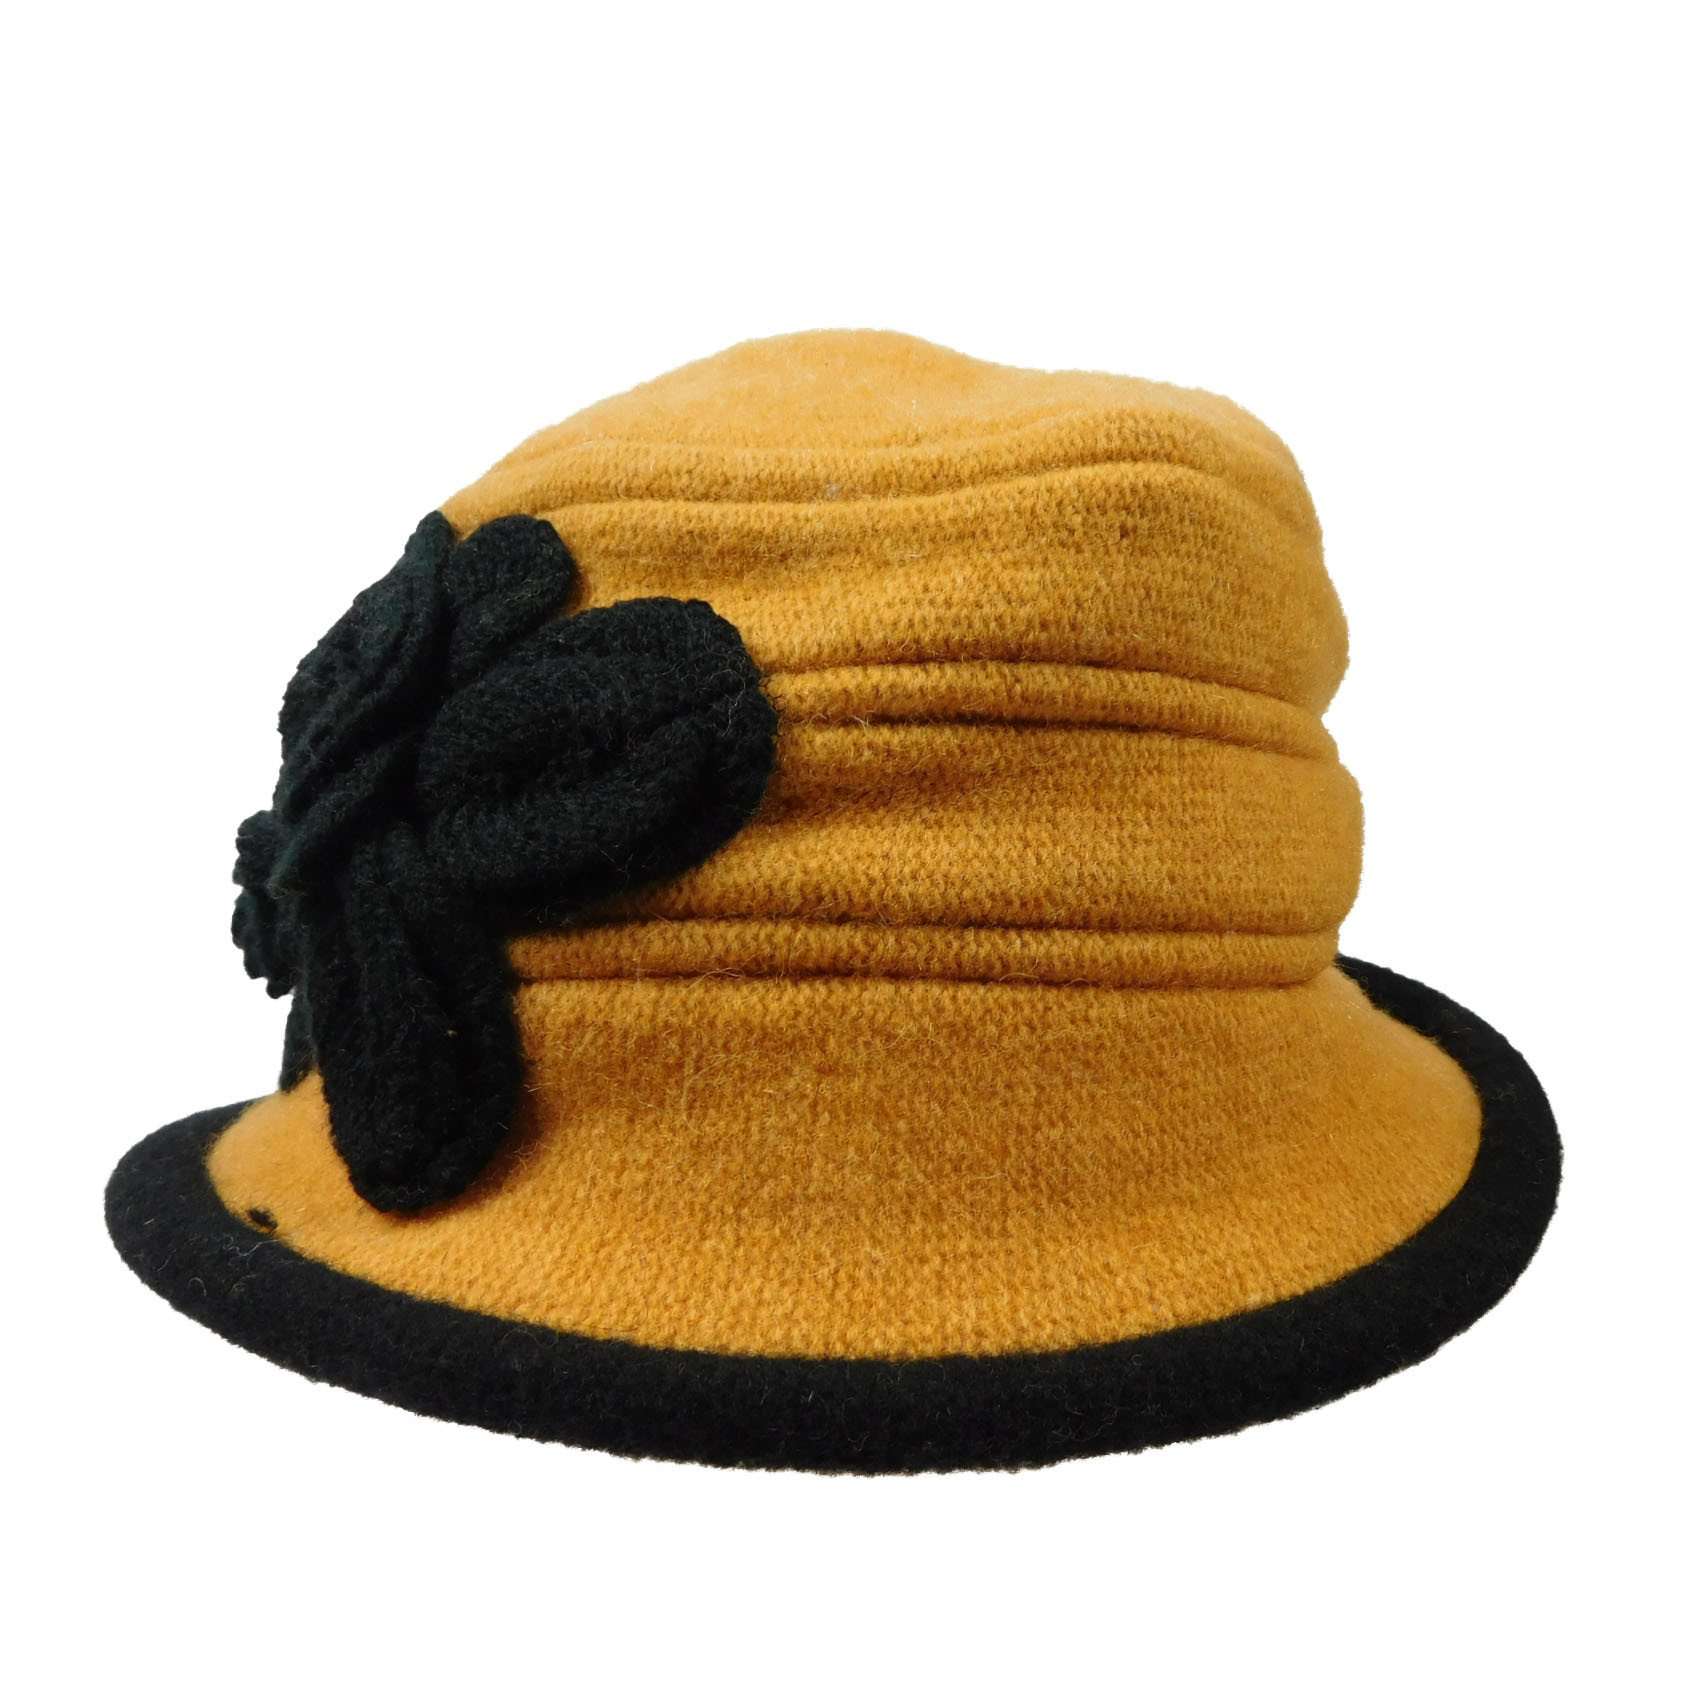 Wool Bucket Hat with Crochet Flower Beanie Jeanne Simmons    